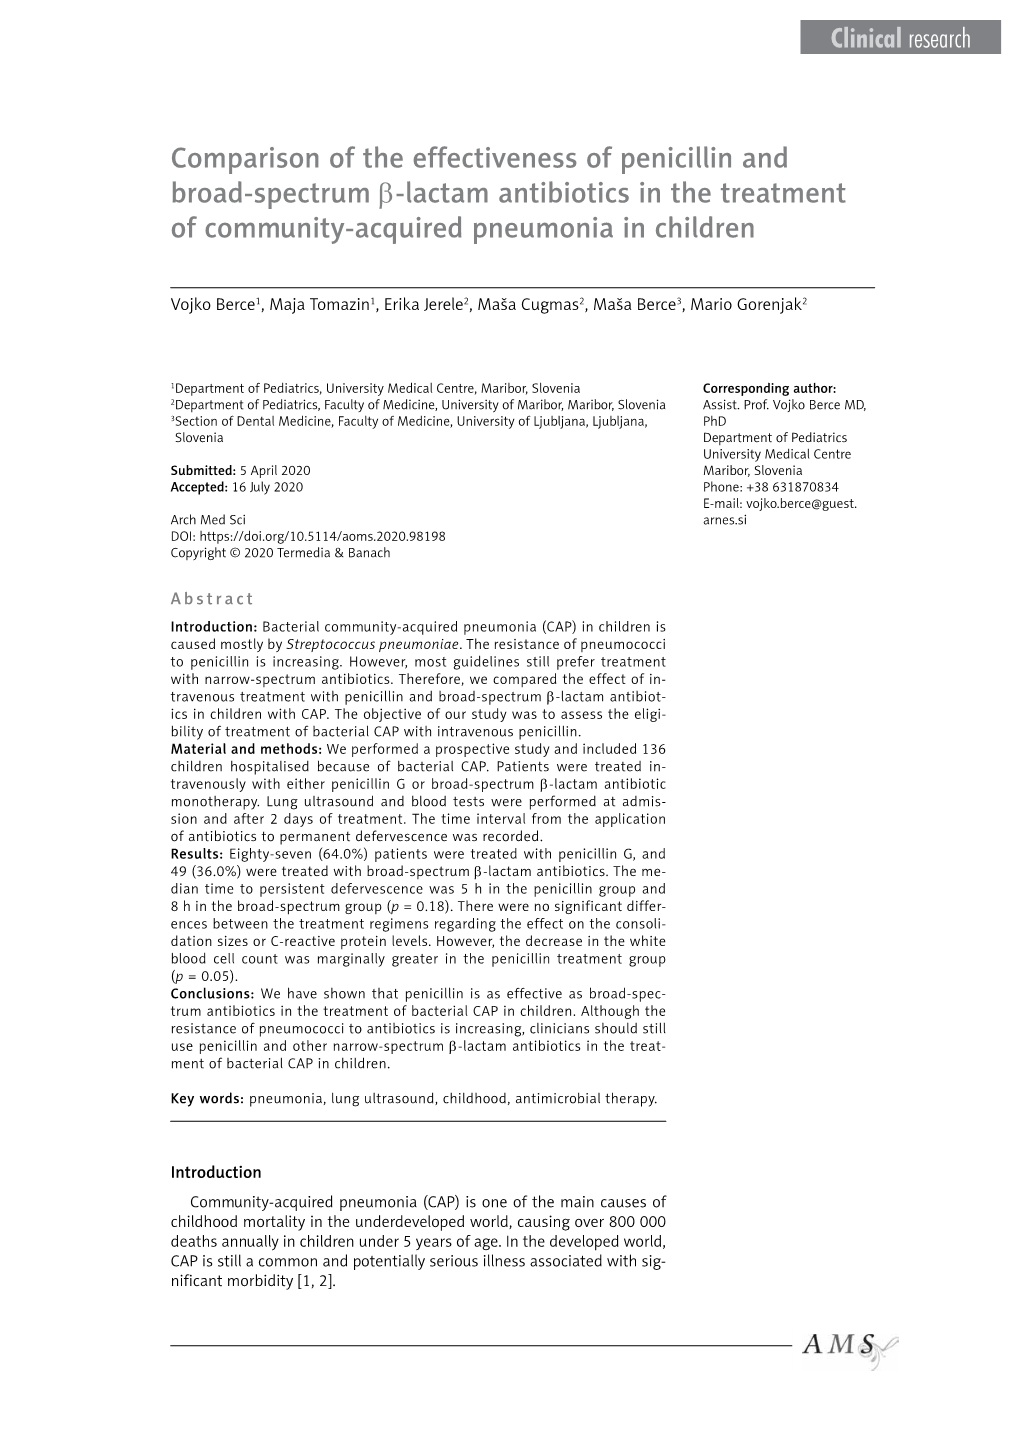 Comparison of the Effectiveness of Penicillin and Broad-Spectrum Β-Lactam Antibiotics in the Treatment of Community-Acquired Pneumonia in Children